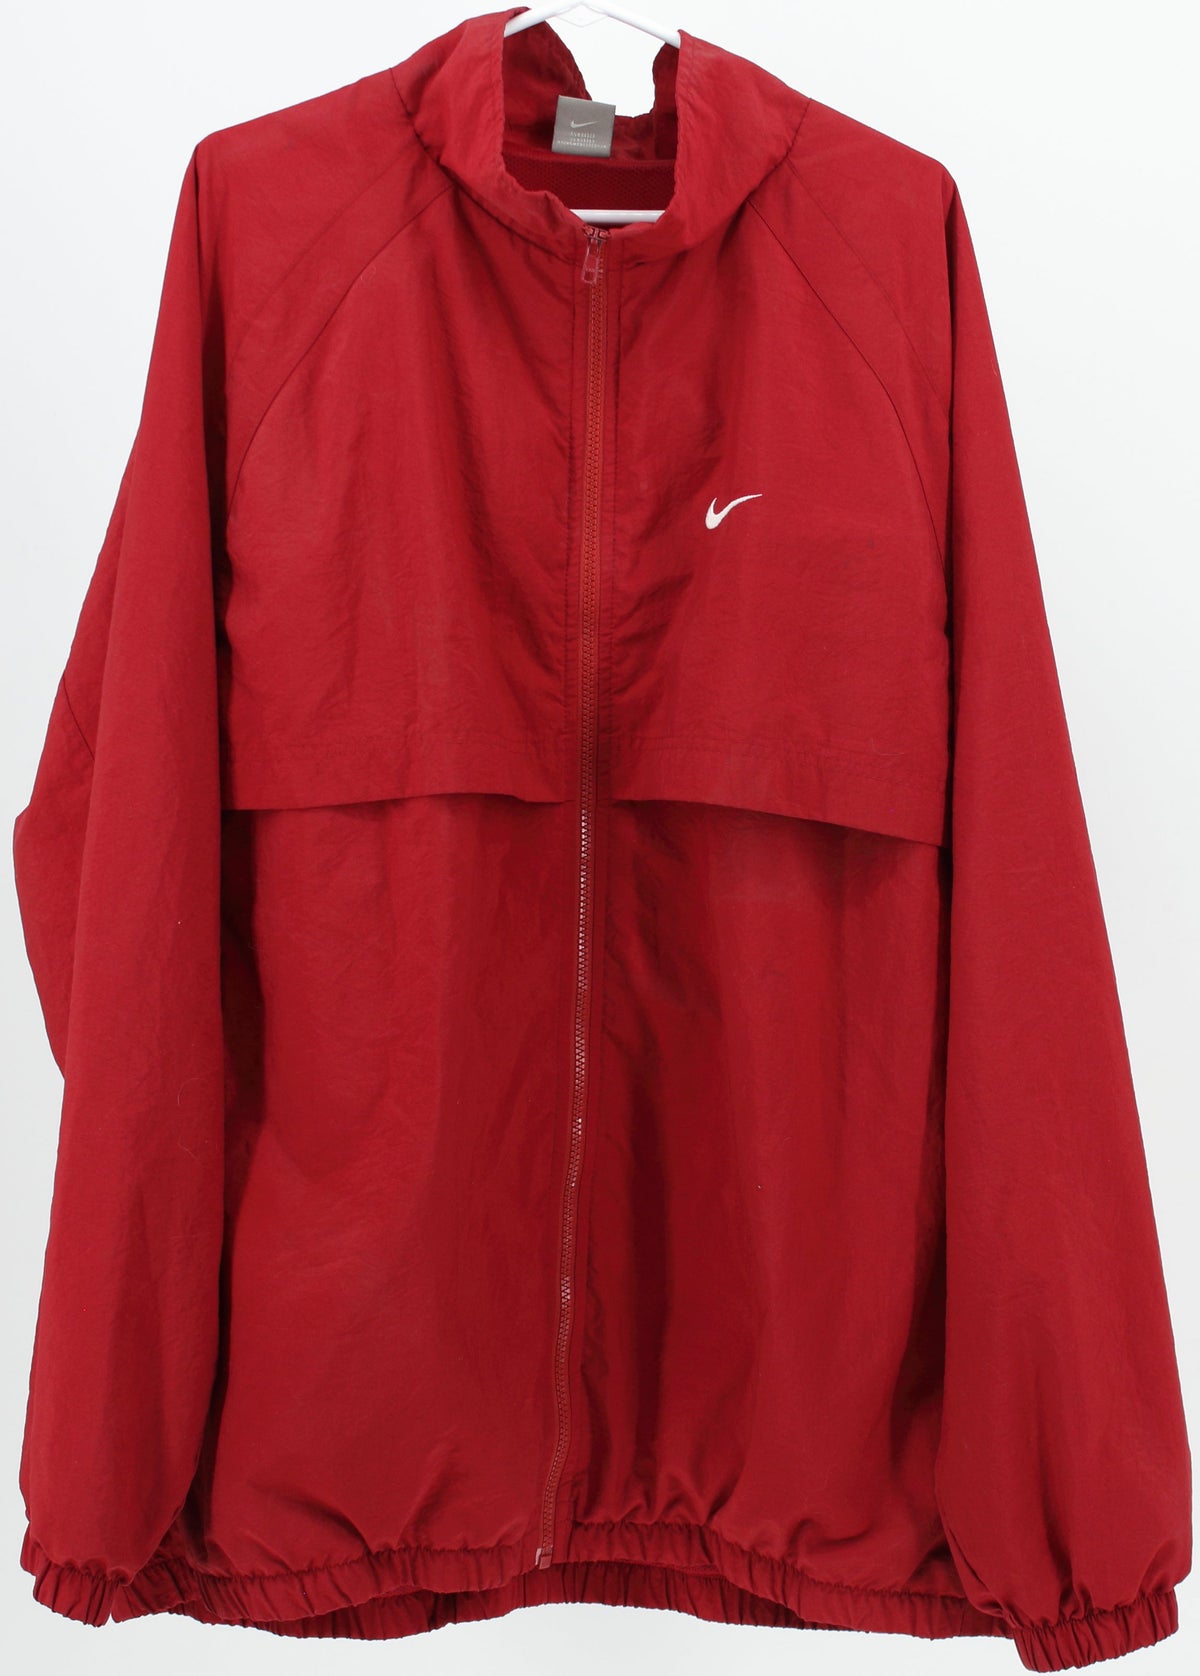 Nike Red Men's Jacket